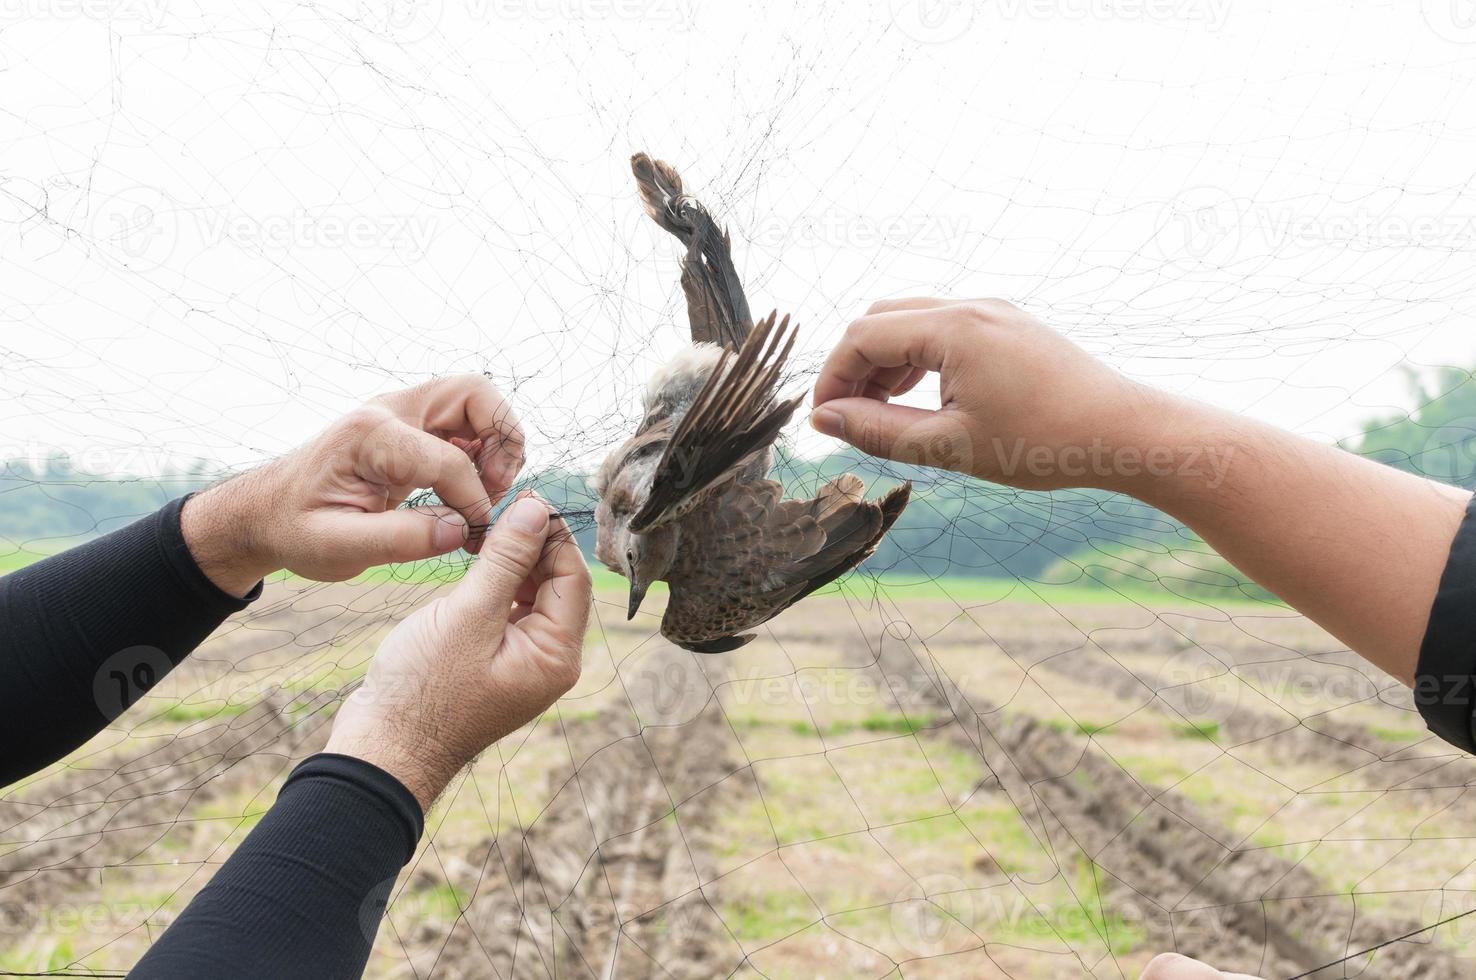 fågel var fångad förbi trädgårdsmästare hand innehav på en maska på vit bakgrund, olagligt fågel fälla foto